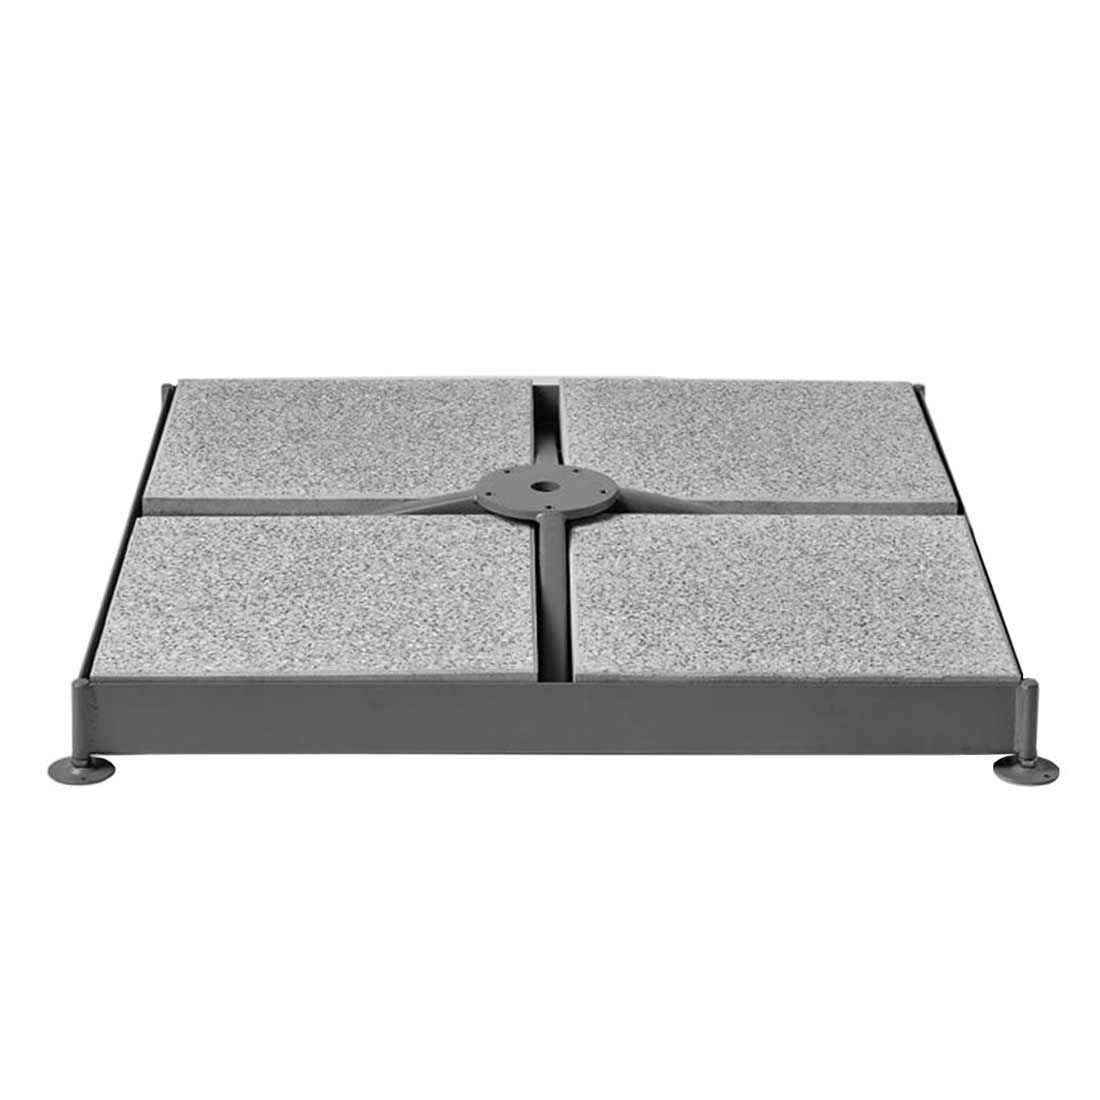 Glatz Gartenplatten Beton 40x40x4 cm, 8 Stück für Schirmsockel M4-8 Platten